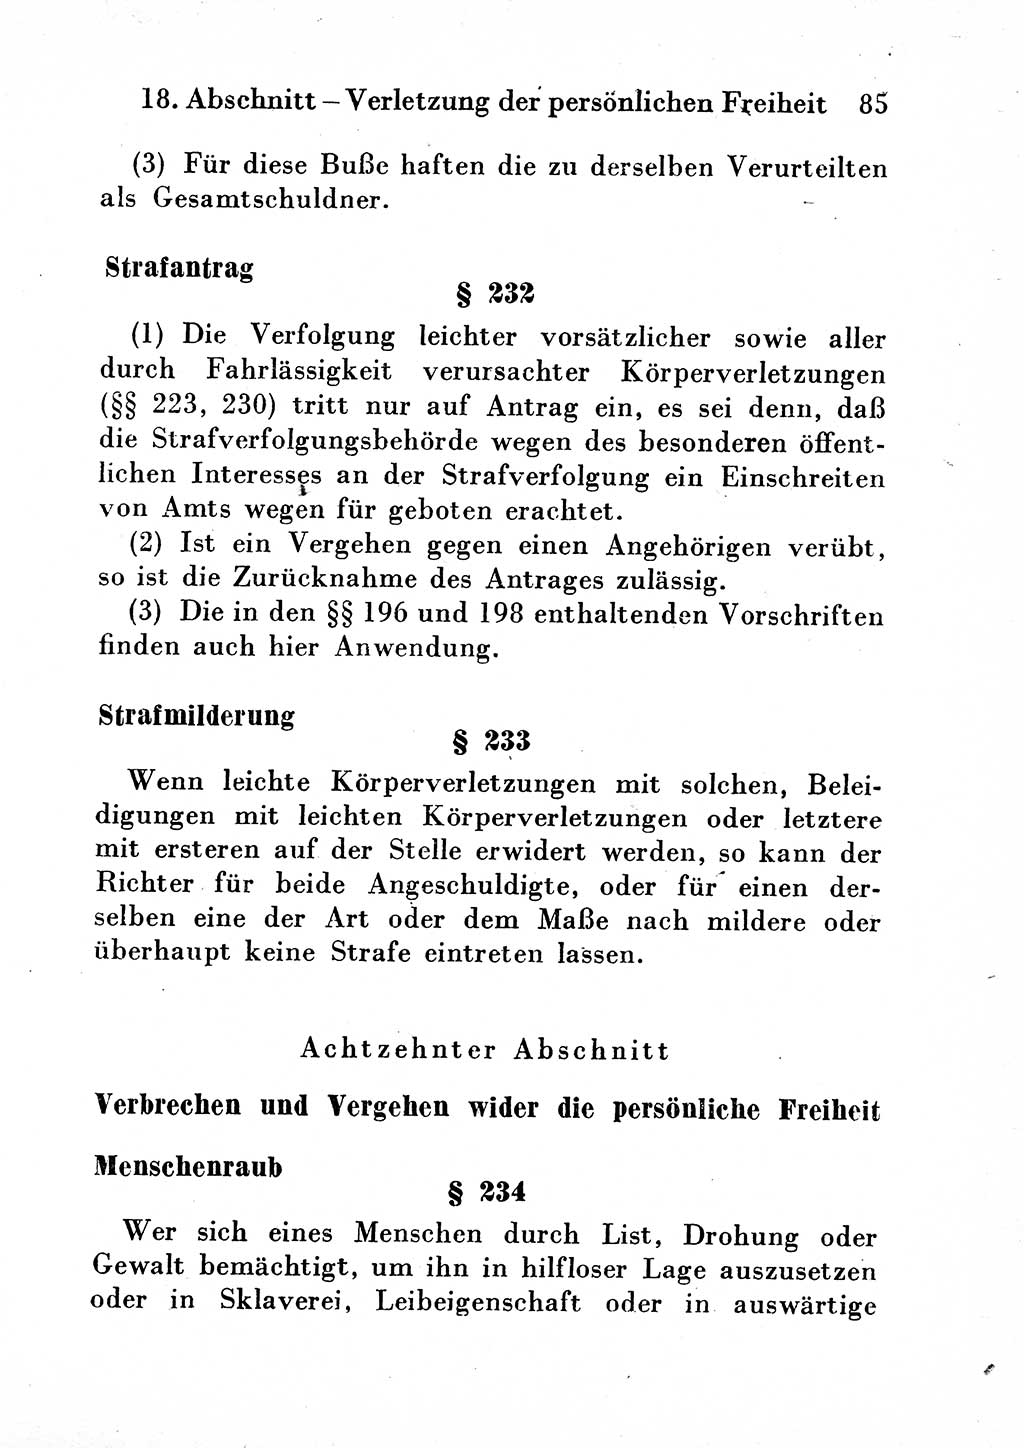 Strafgesetzbuch (StGB) und andere Strafgesetze [Deutsche Demokratische Republik (DDR)] 1954, Seite 85 (StGB Strafges. DDR 1954, S. 85)